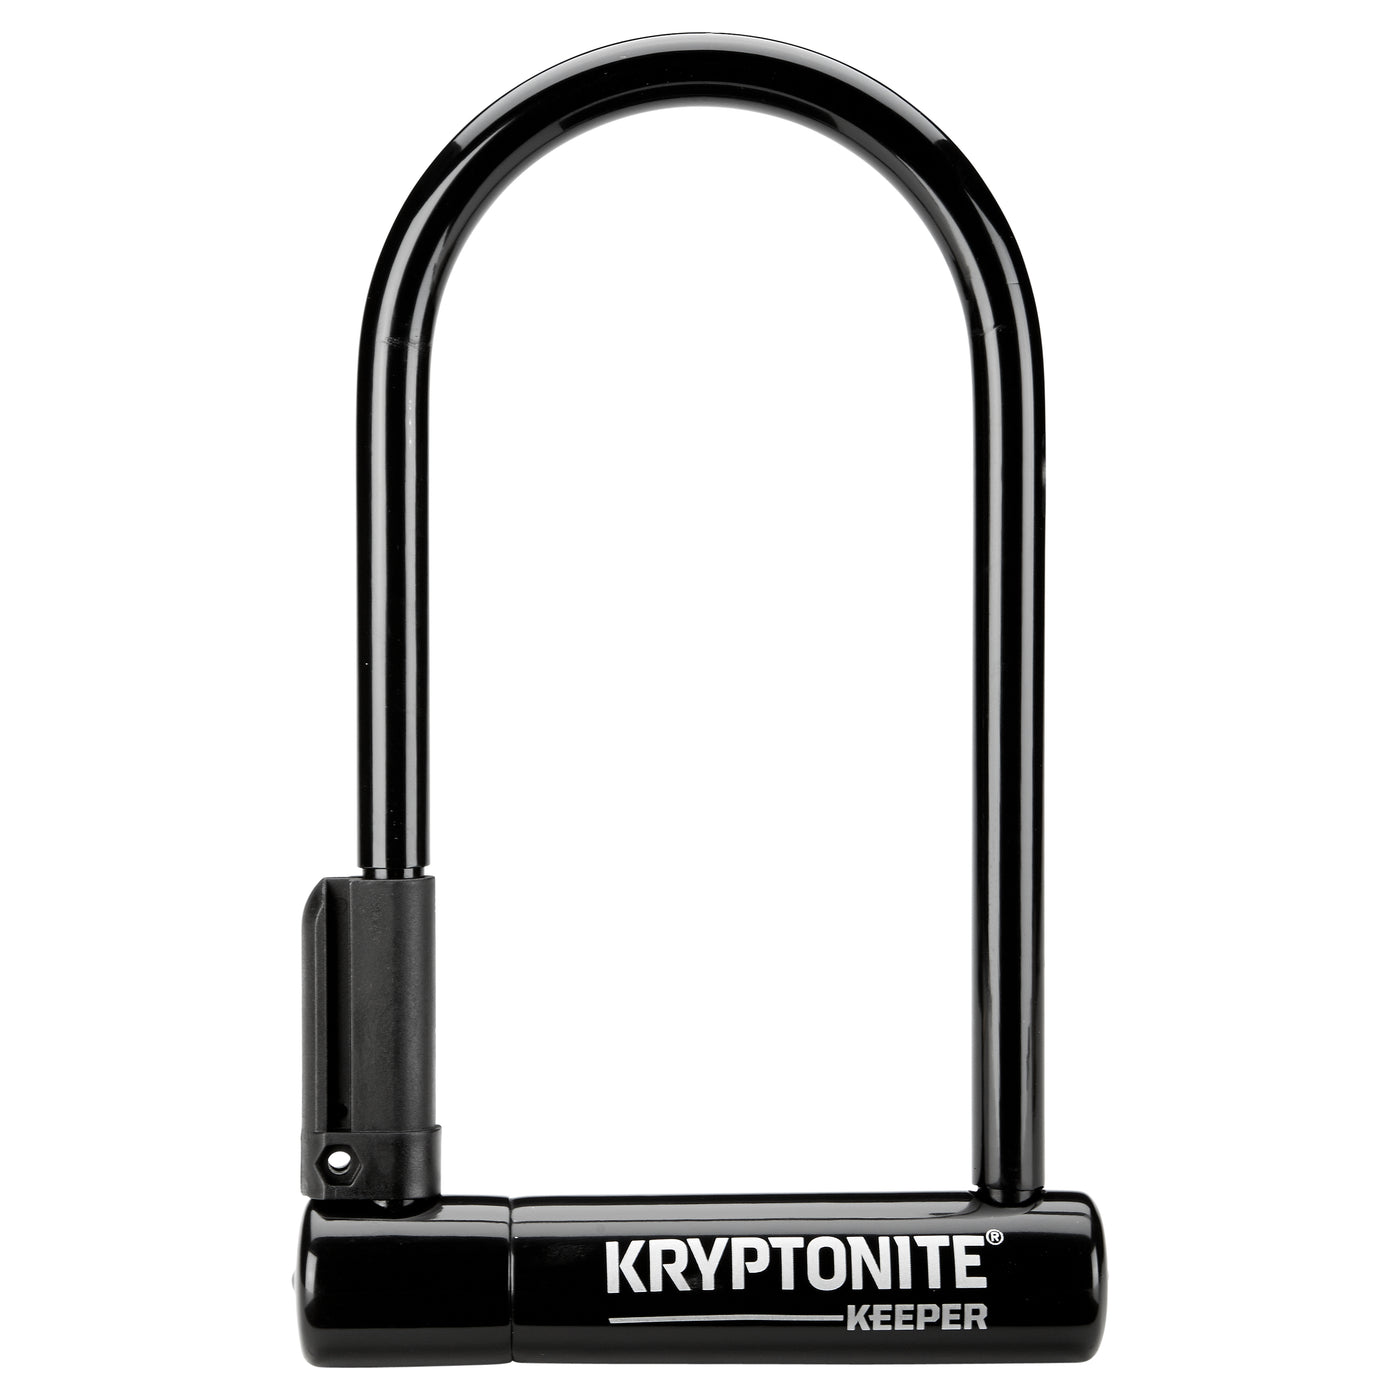 Kryptonite Keeper Original Standard U-Lock with bracket